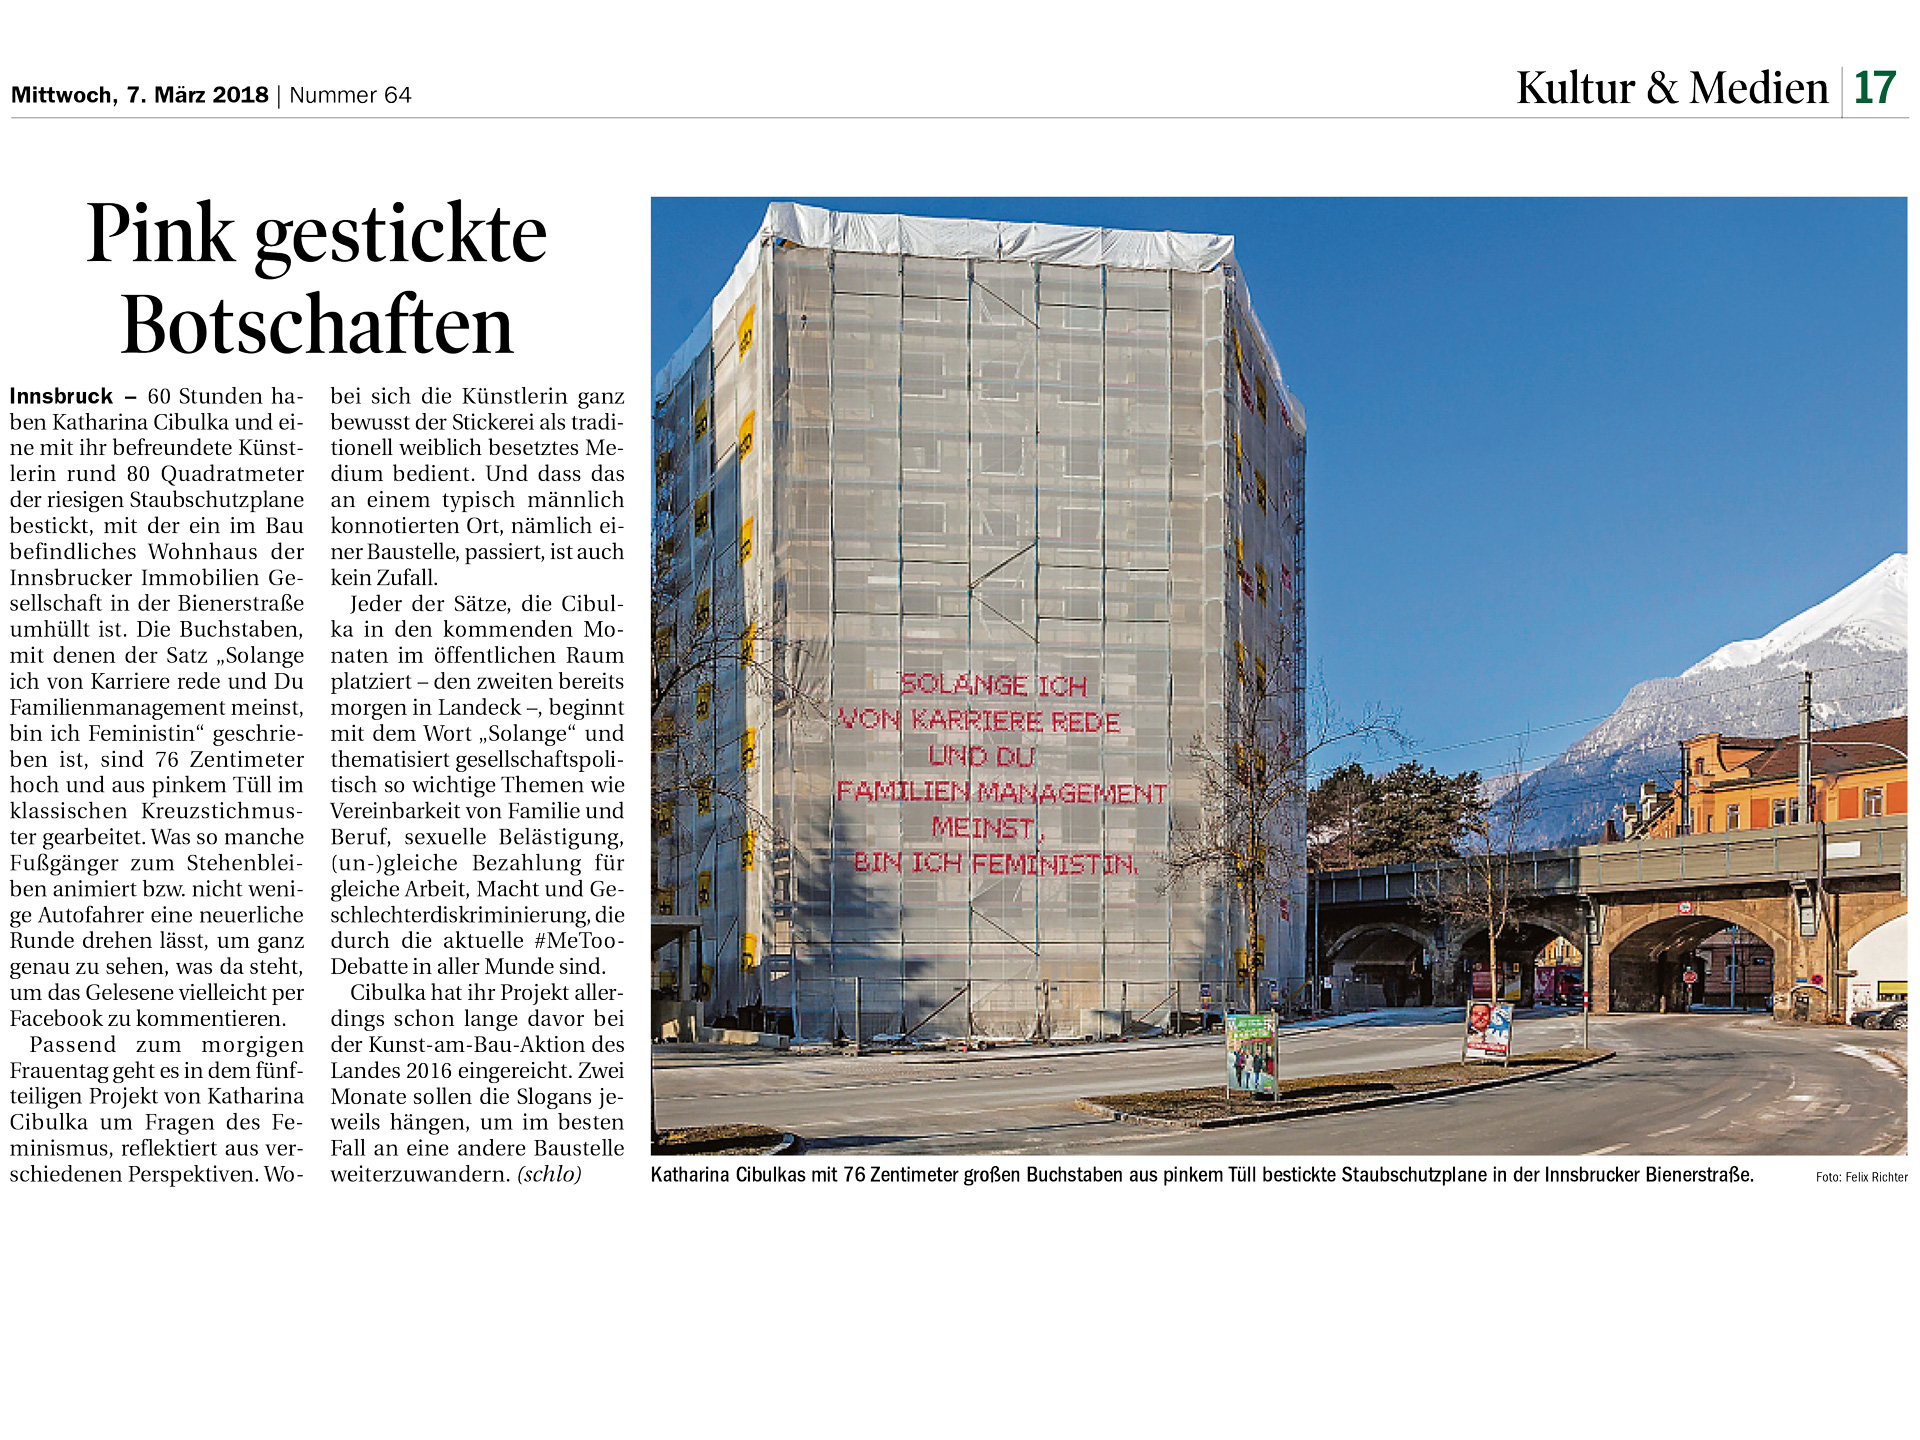 Tiroler Tageszeitung – Pink gestickte Botschaften – 07/03/18